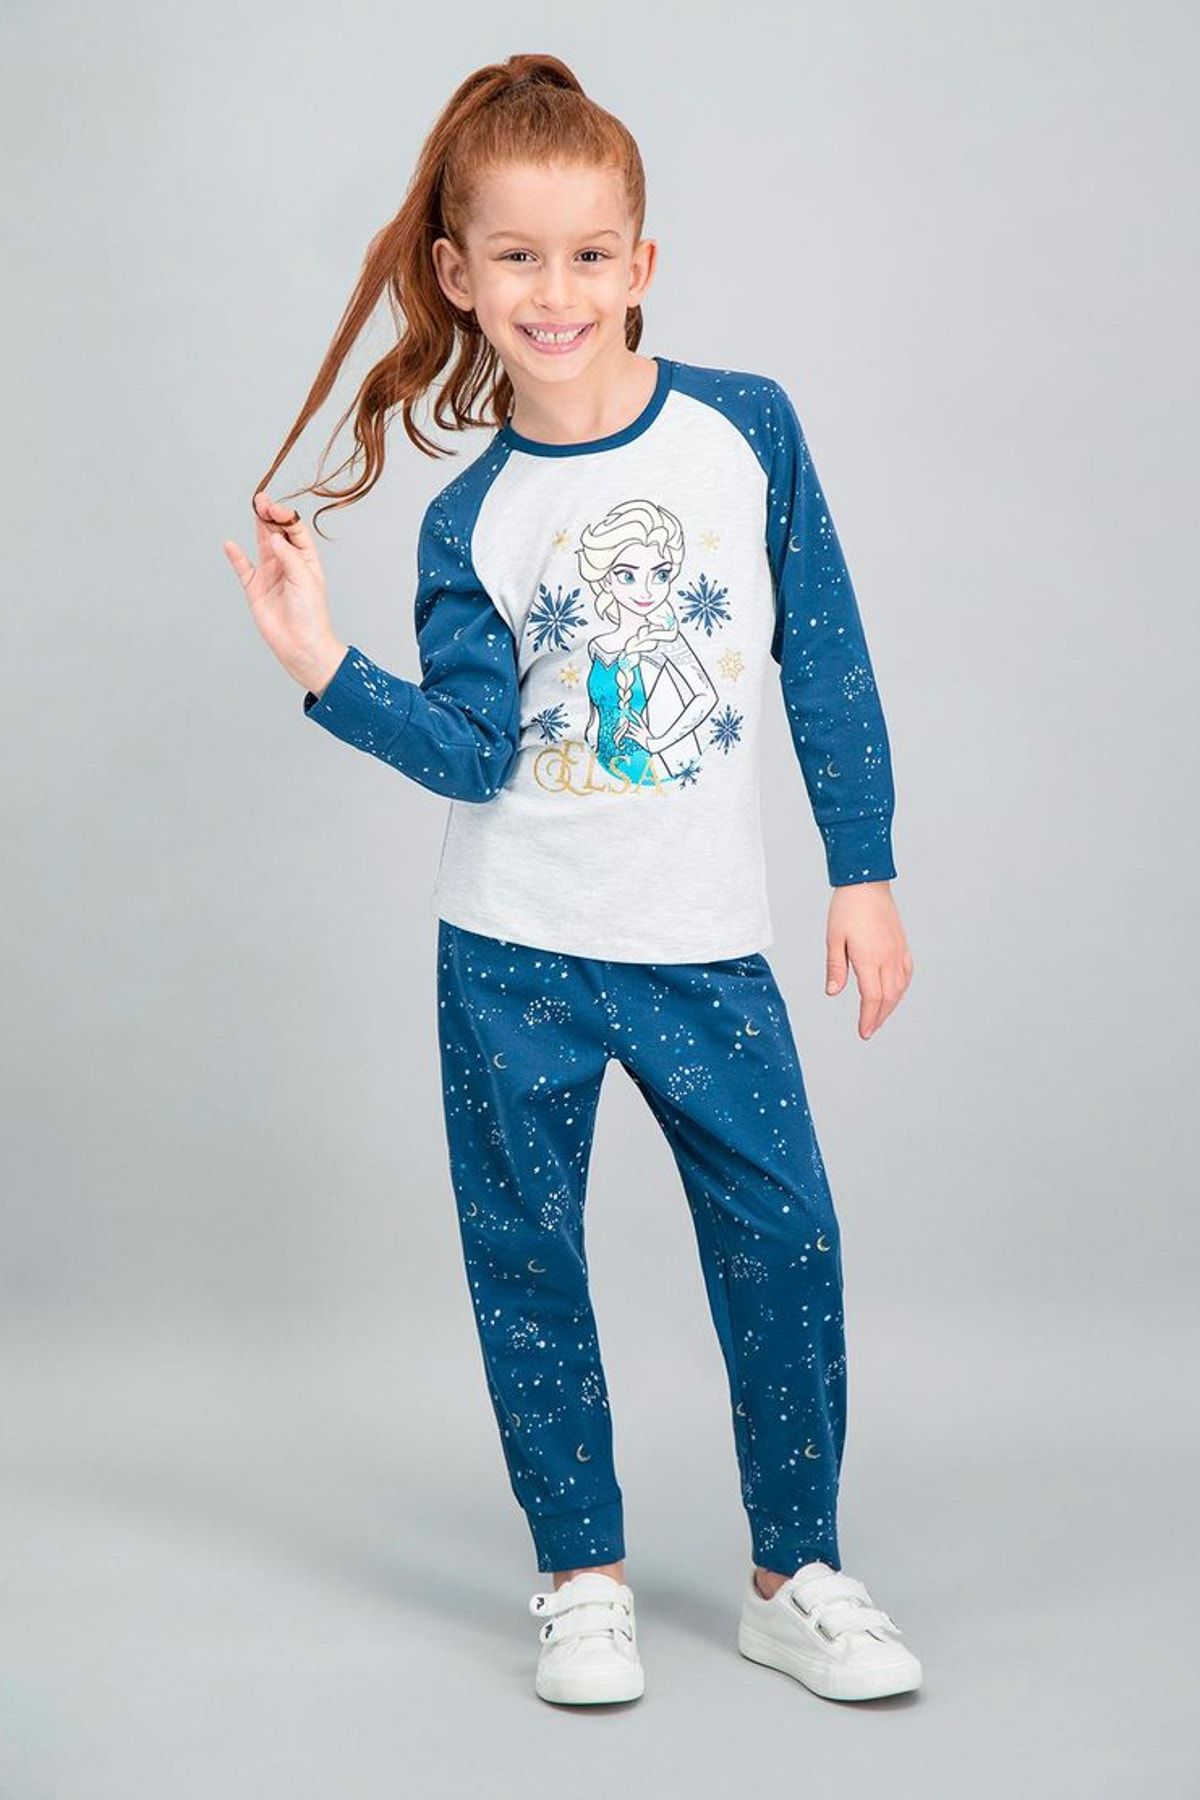 Frozen Karlar Ülkesi - Frozen Lisanslı Karmelanj Kız Çocuk Pijama Takımı